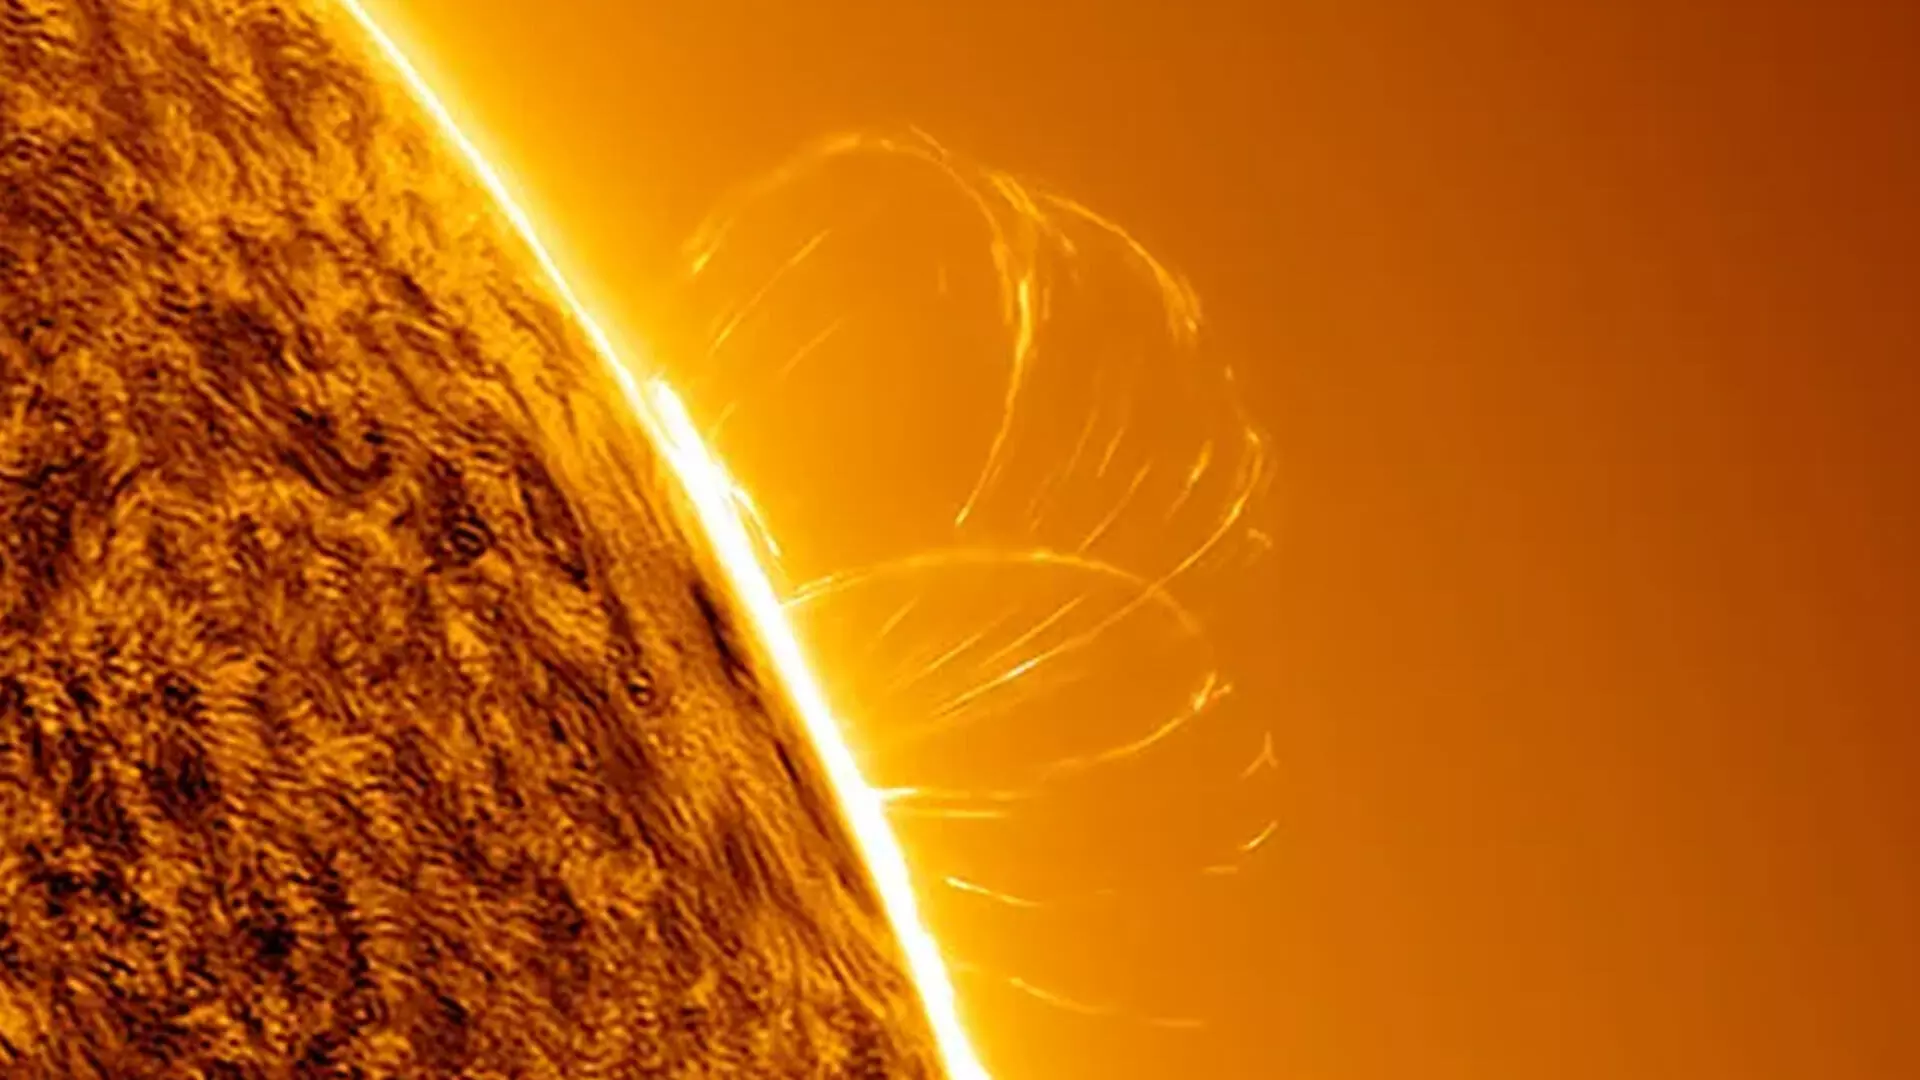 वैज्ञानिकों ने सूर्य के चुंबकीय क्षेत्र की संभावित उत्पत्ति की खोज की